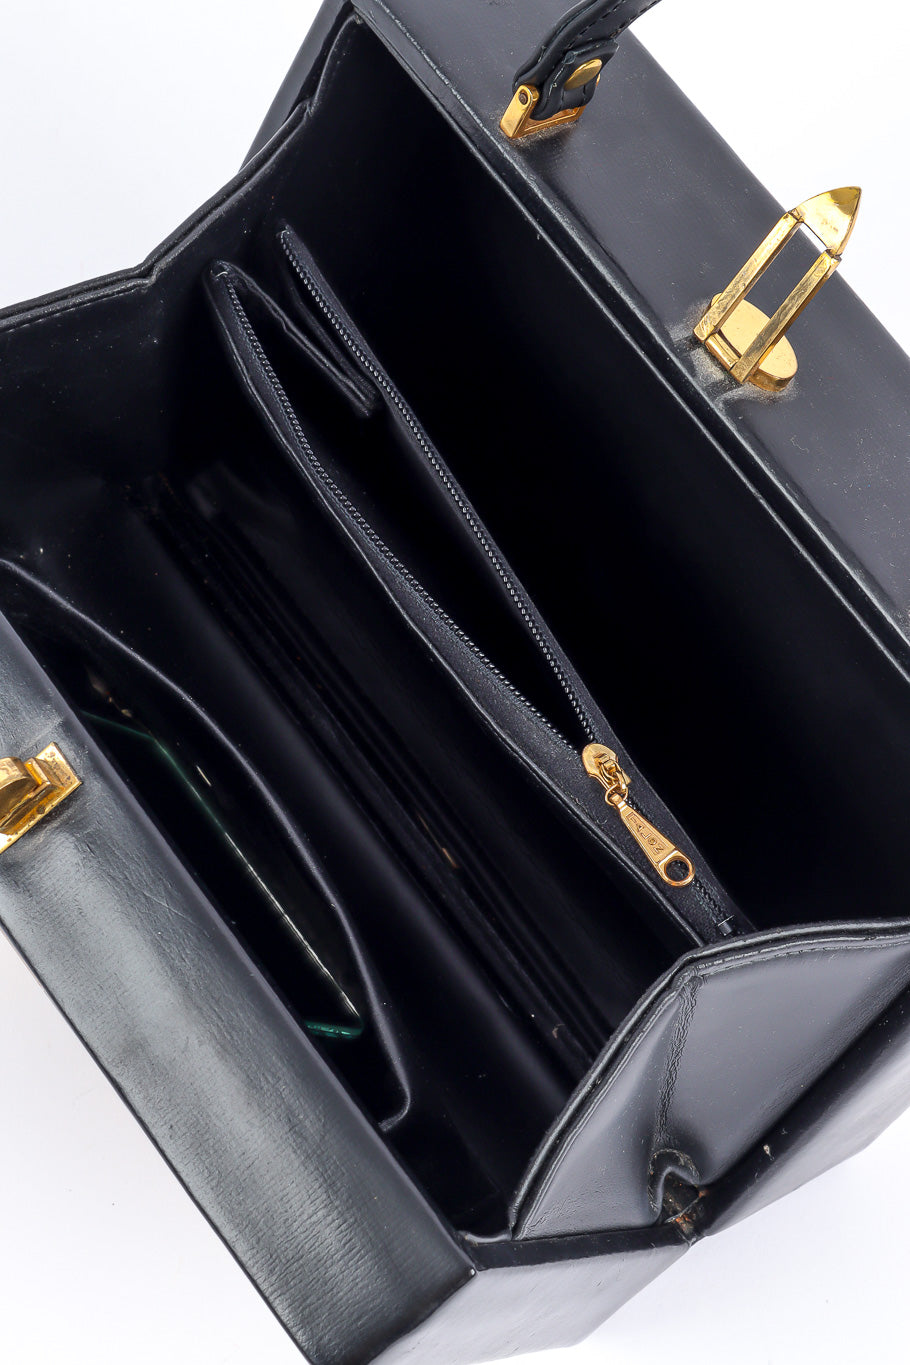 Murray Kruger european crest box bag inside detail product shot @recessla